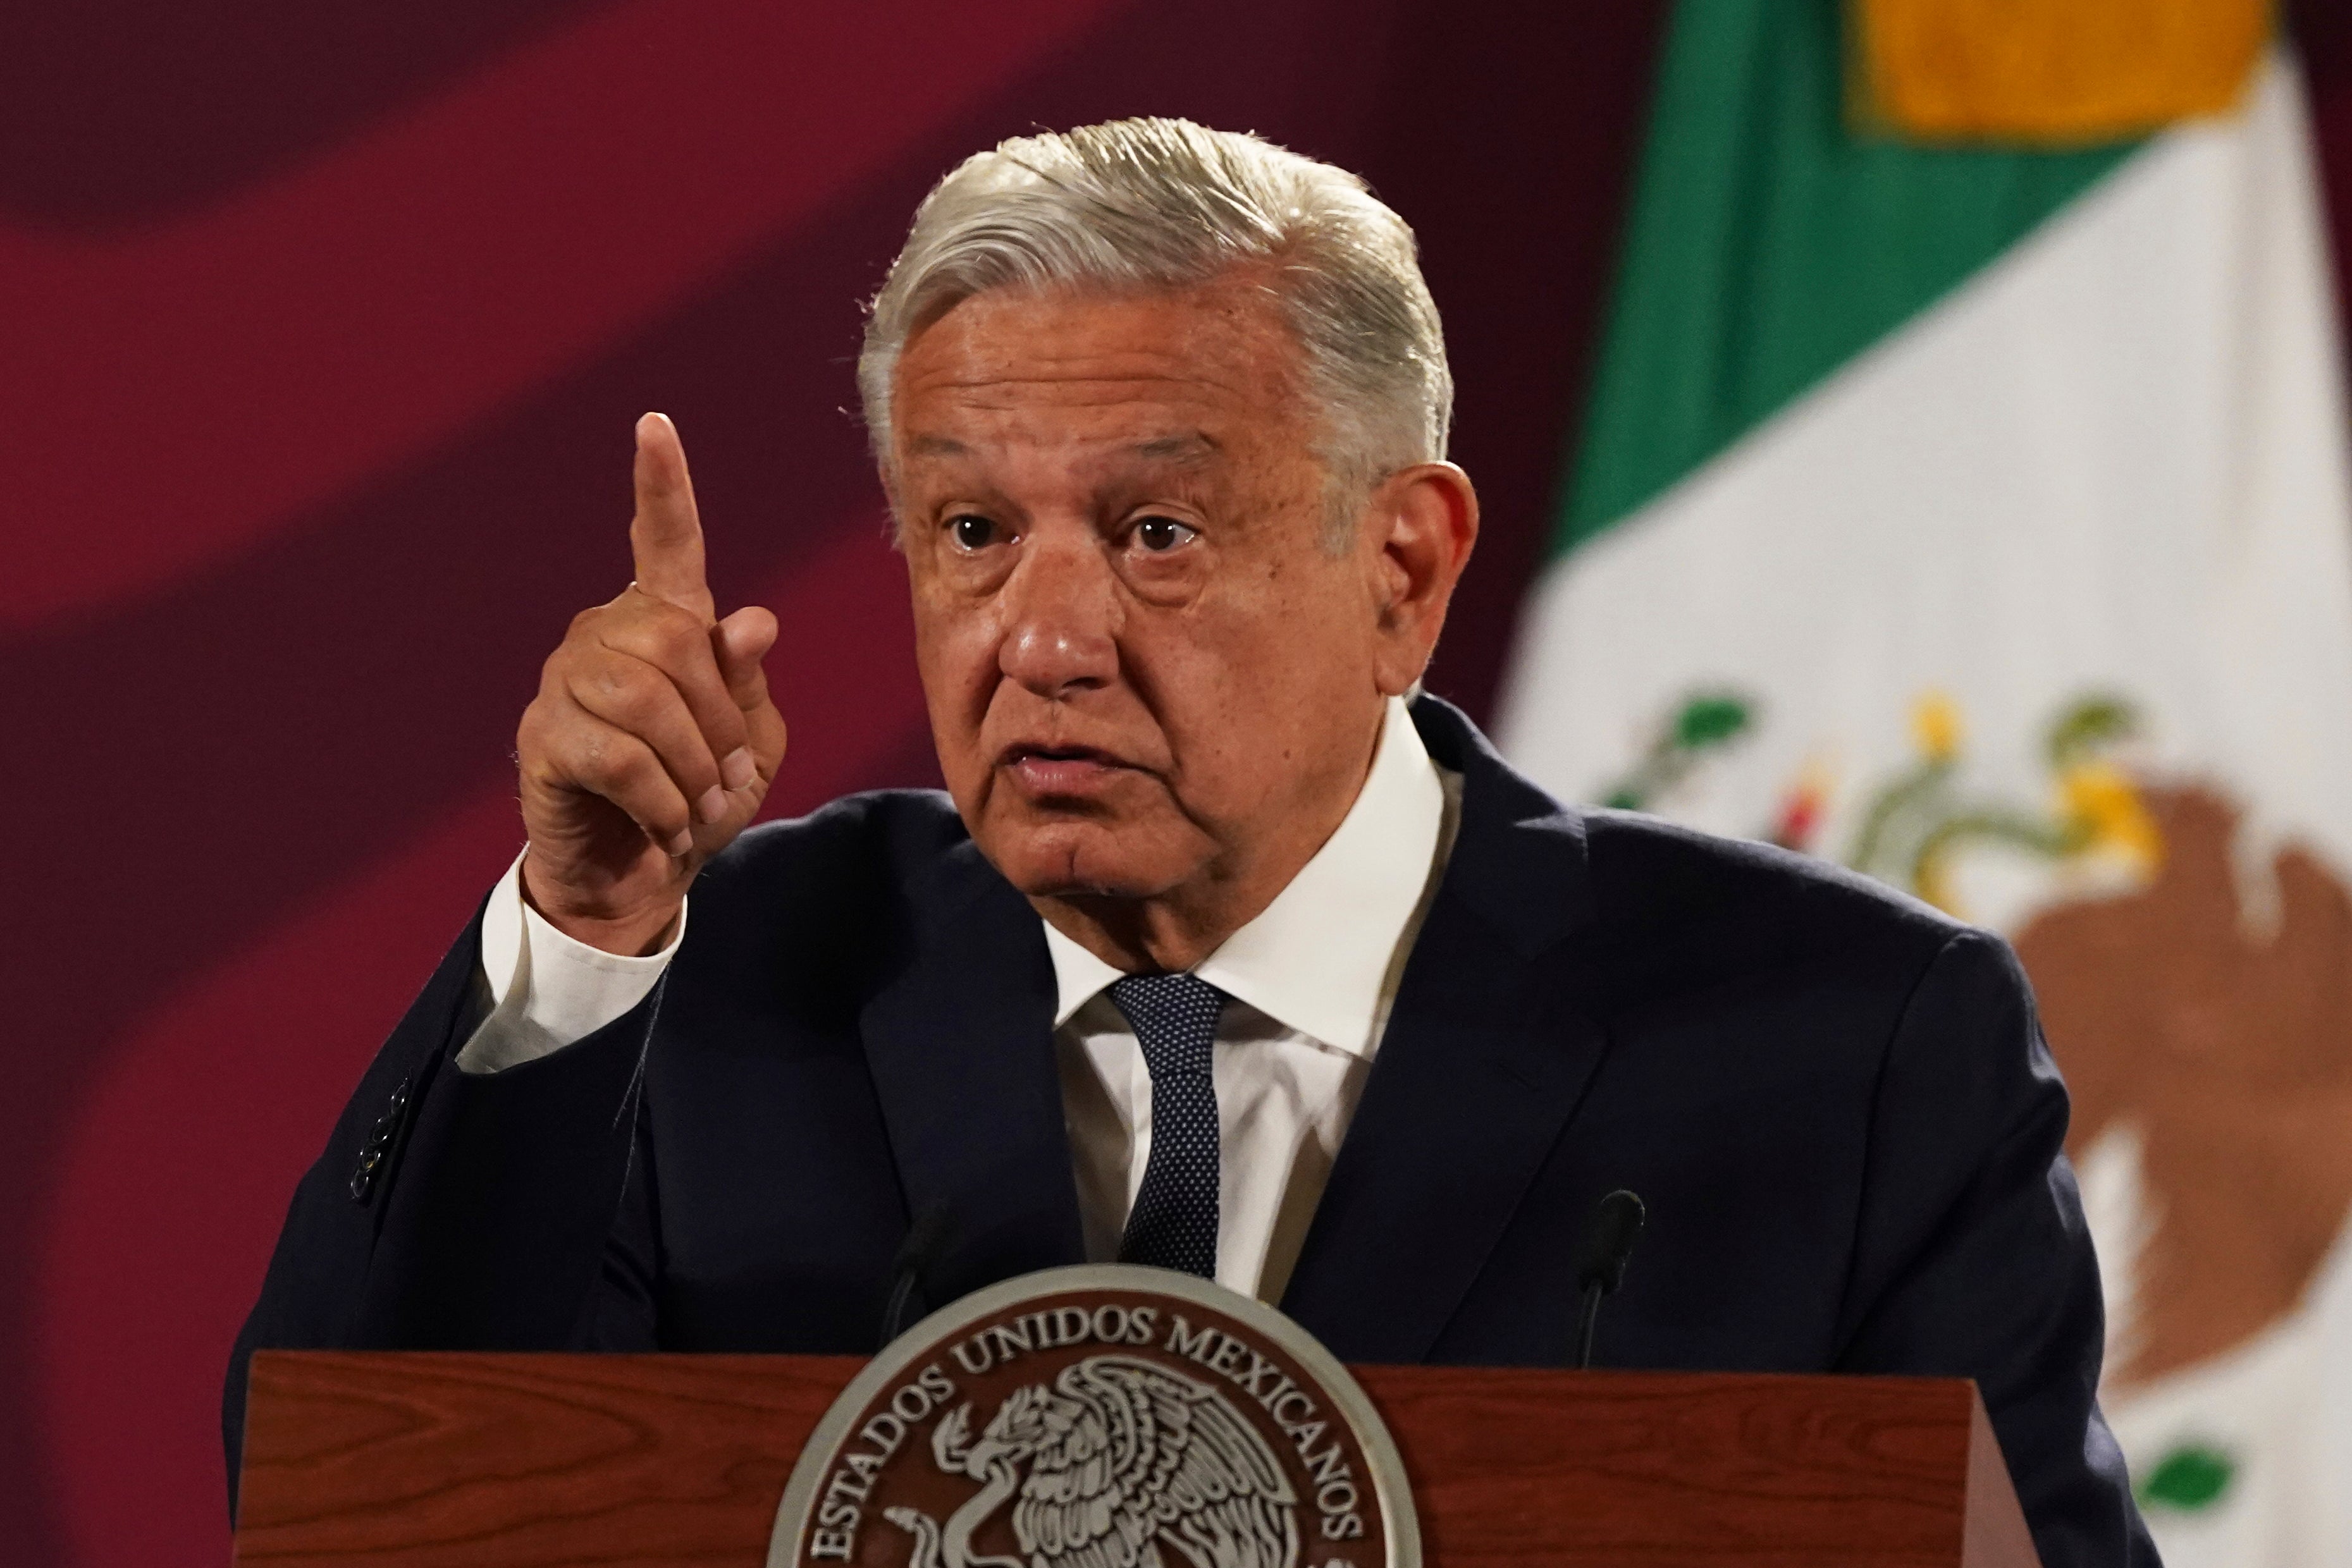 El presidente de México, Andrés Manuel López Obrador, afirmó que puso fin a “la espiral ascendente” de violencia en una conferencia de prensa el 27 de diciembre del año pasado.